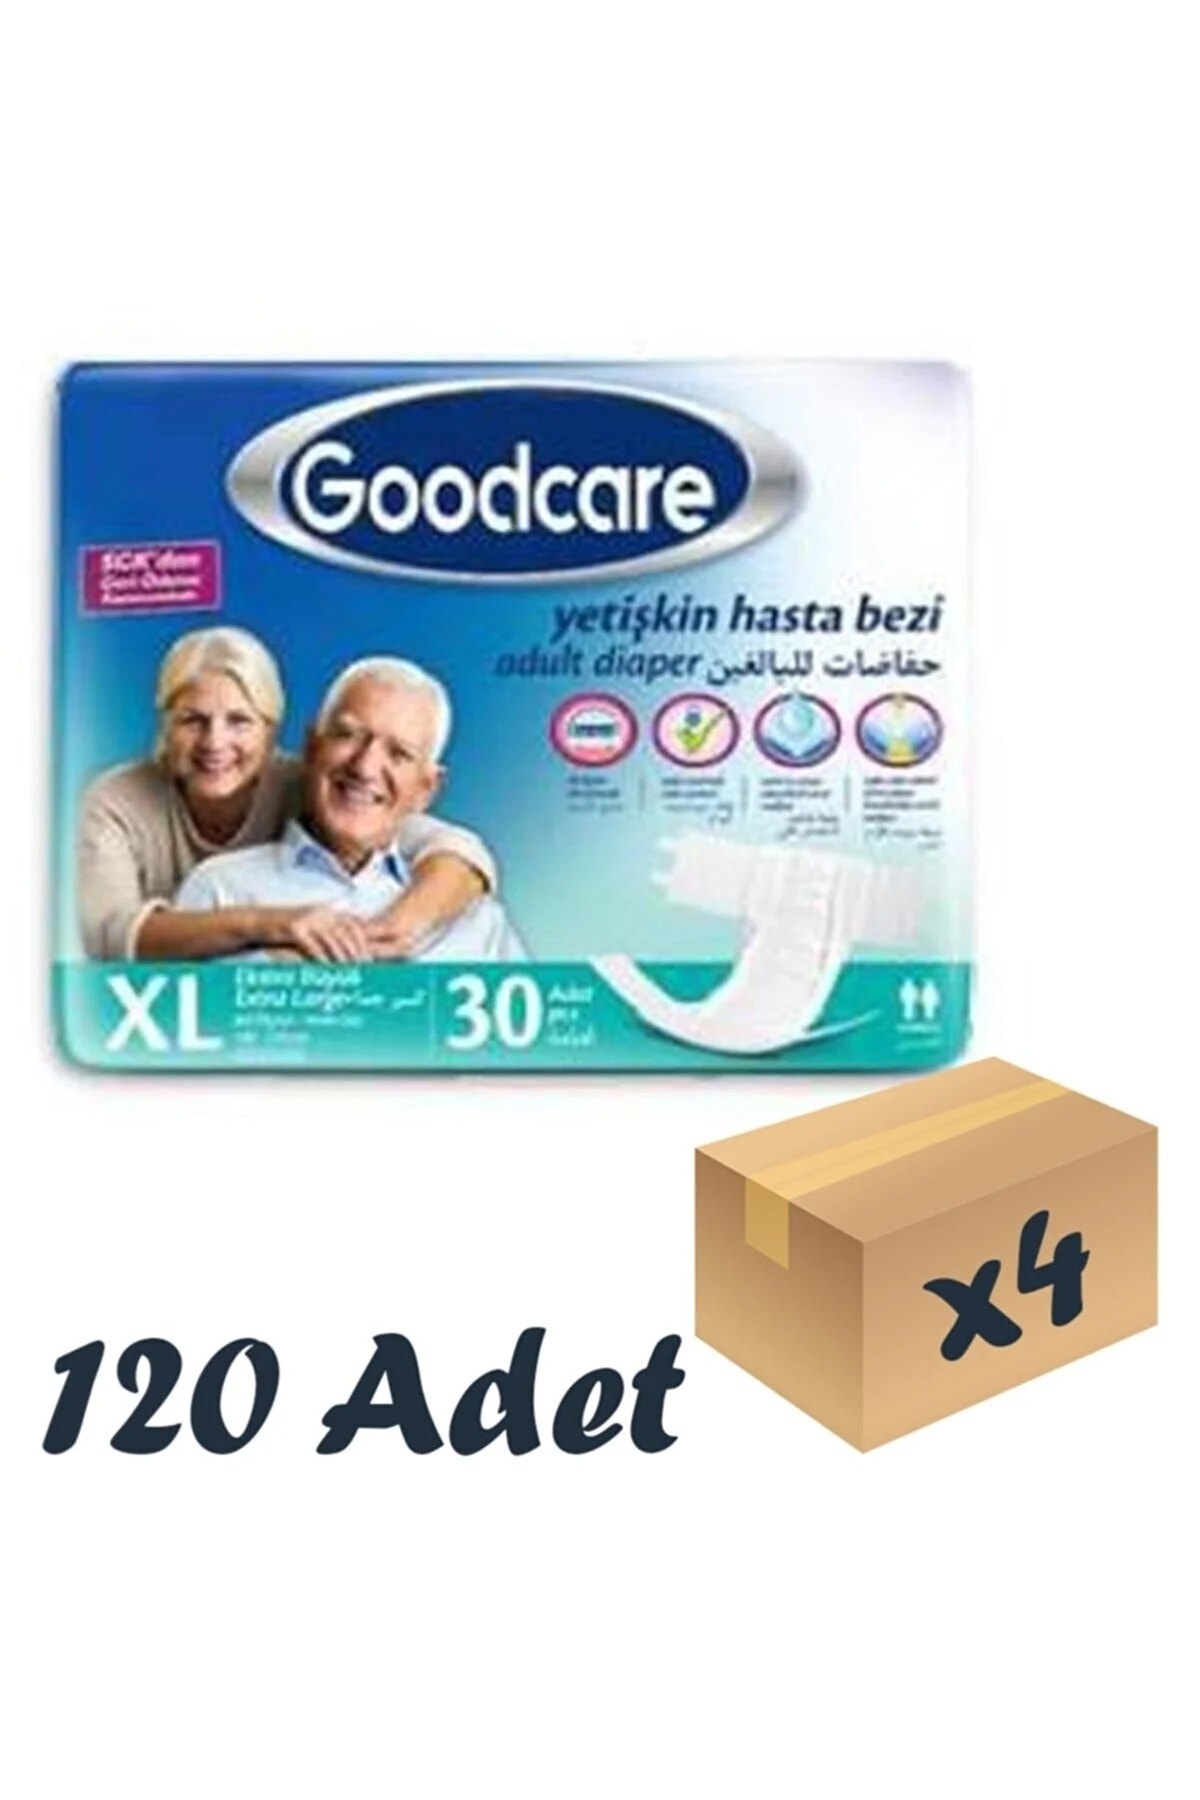 Goodcare Bel Bantlı Yetişkin Hasta Bezi Xl 30 Lu 4 Paket 120 Adet